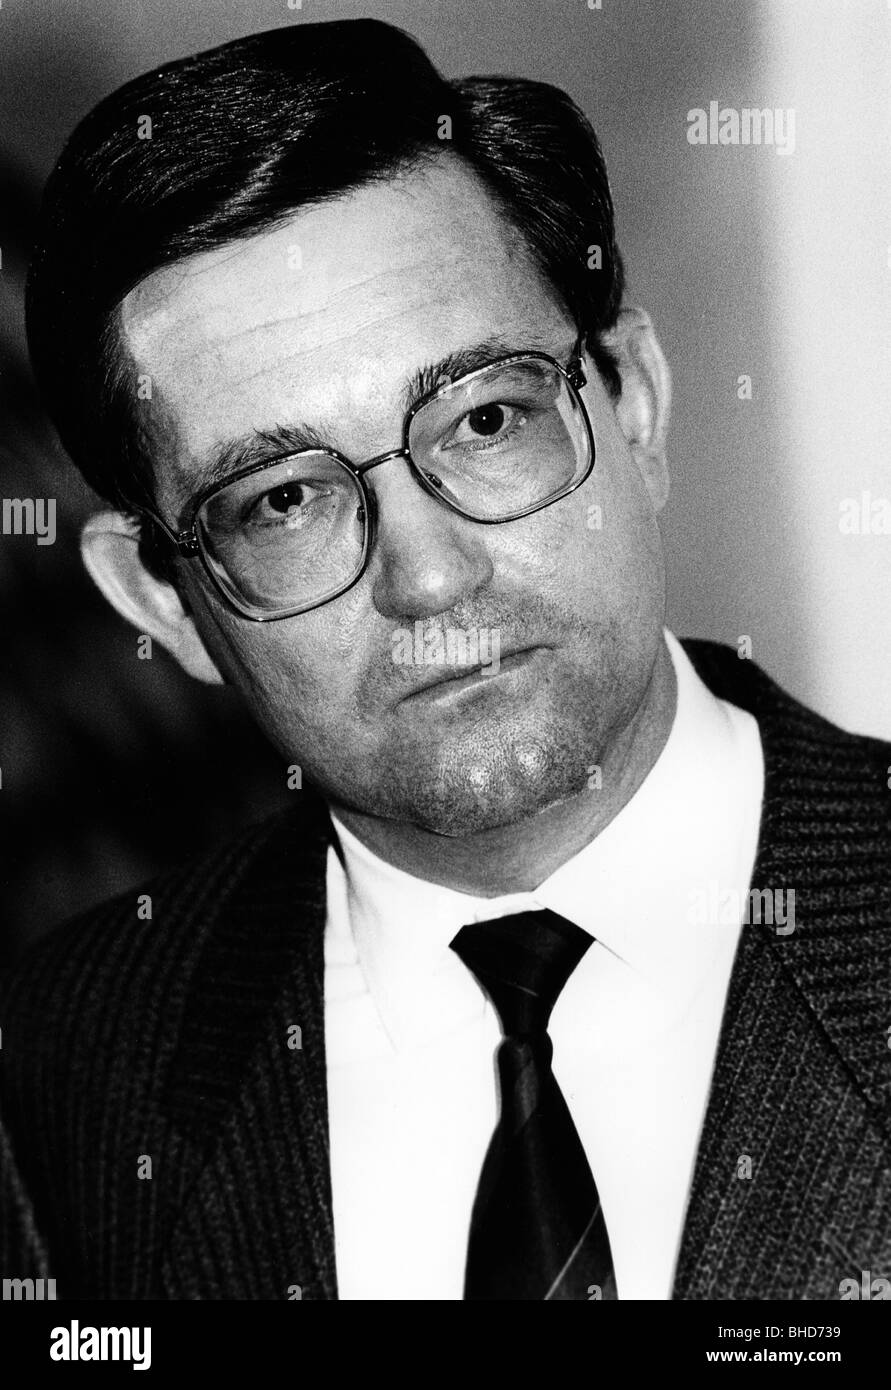 Spranger, Carl-Dieter, * 28.3.1939, politico tedesco (CDU), Segretario di Stato parlamentare al Ministero federale tedesco degli interni, ritratto, 1980s, Foto Stock